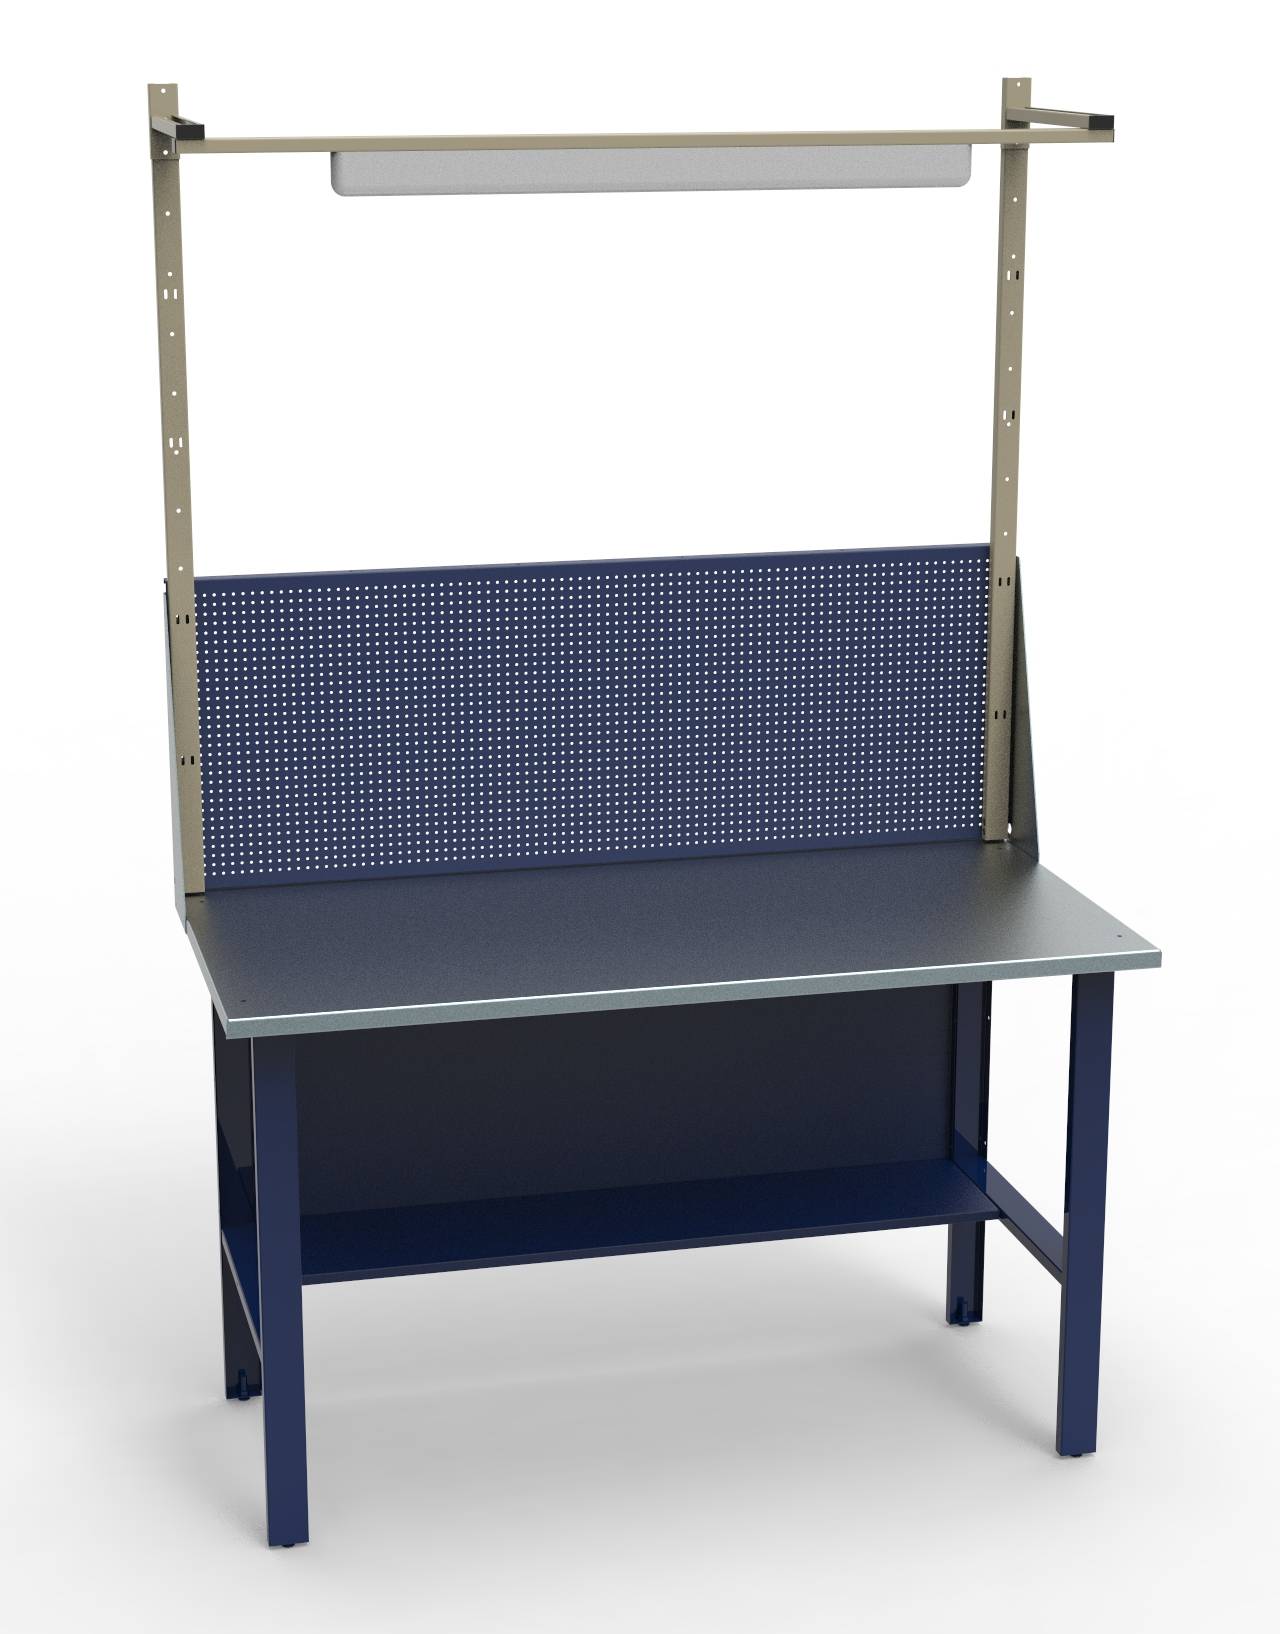 Стол СВ-0Т.00.00.14_сб1 (1400х690х1350 мм) слесарный металлический с защитным экраном и освещением